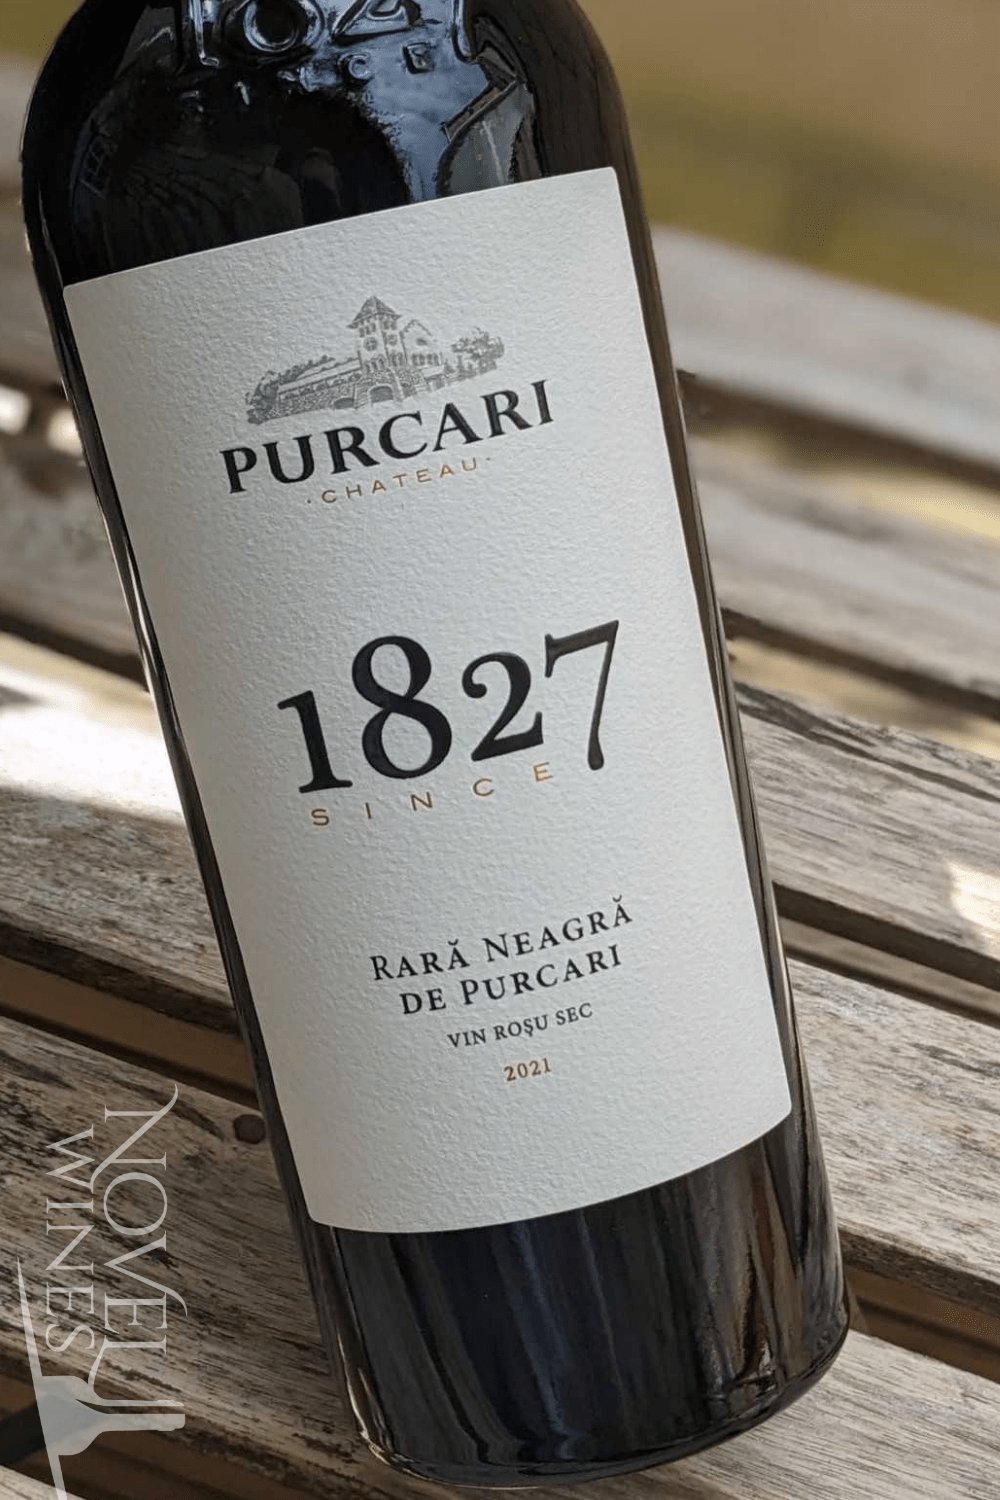 Chateau Purcari Red Wine Chateau Purcari '1827' Rara Neagra 2021, Moldova